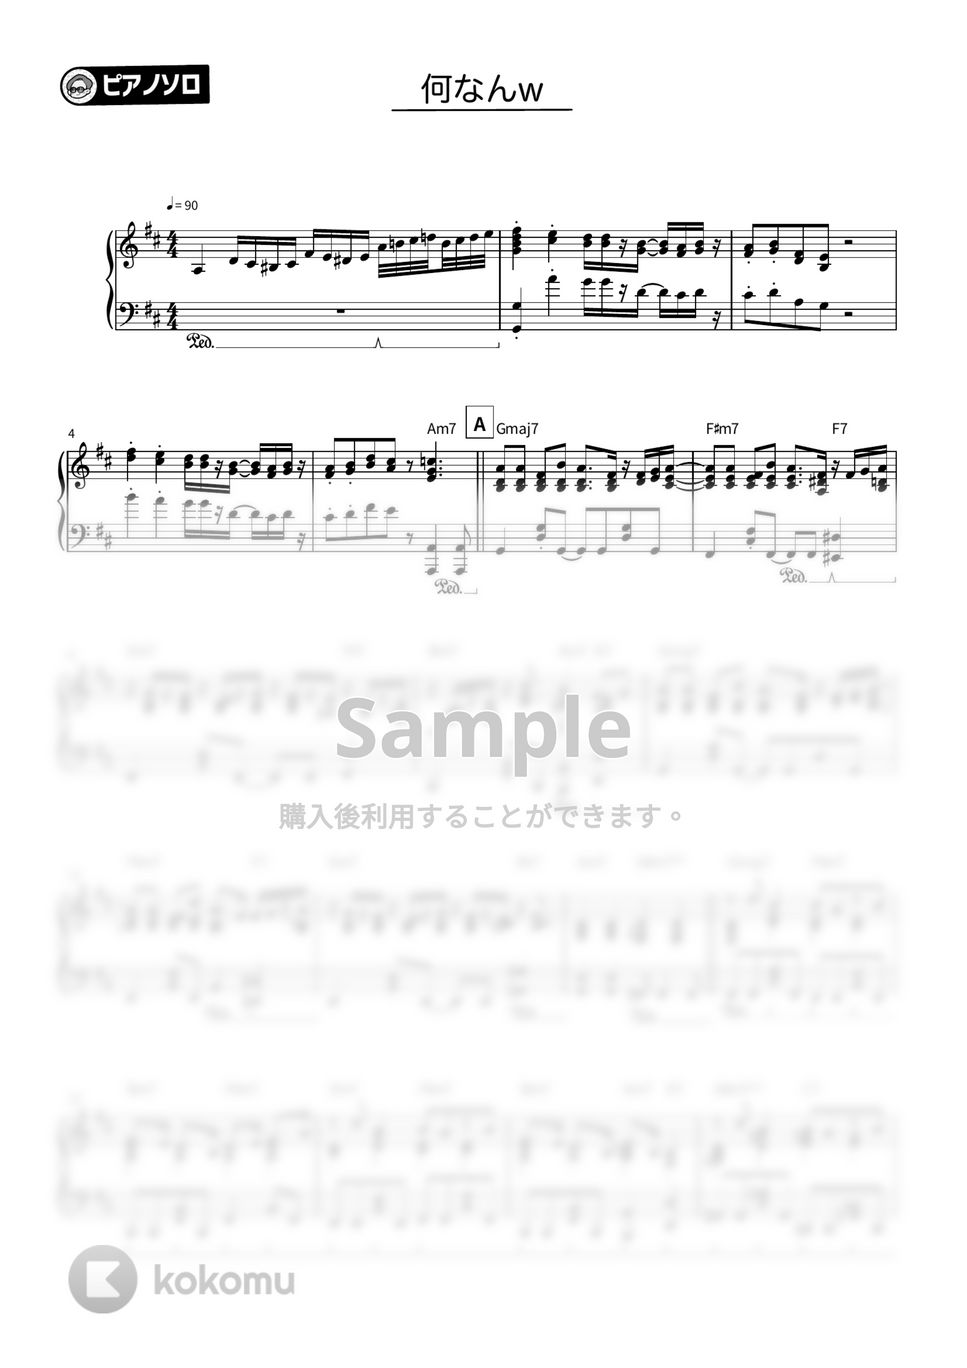 藤井風 - 何なんw (超絶ver.) by シータピアノ